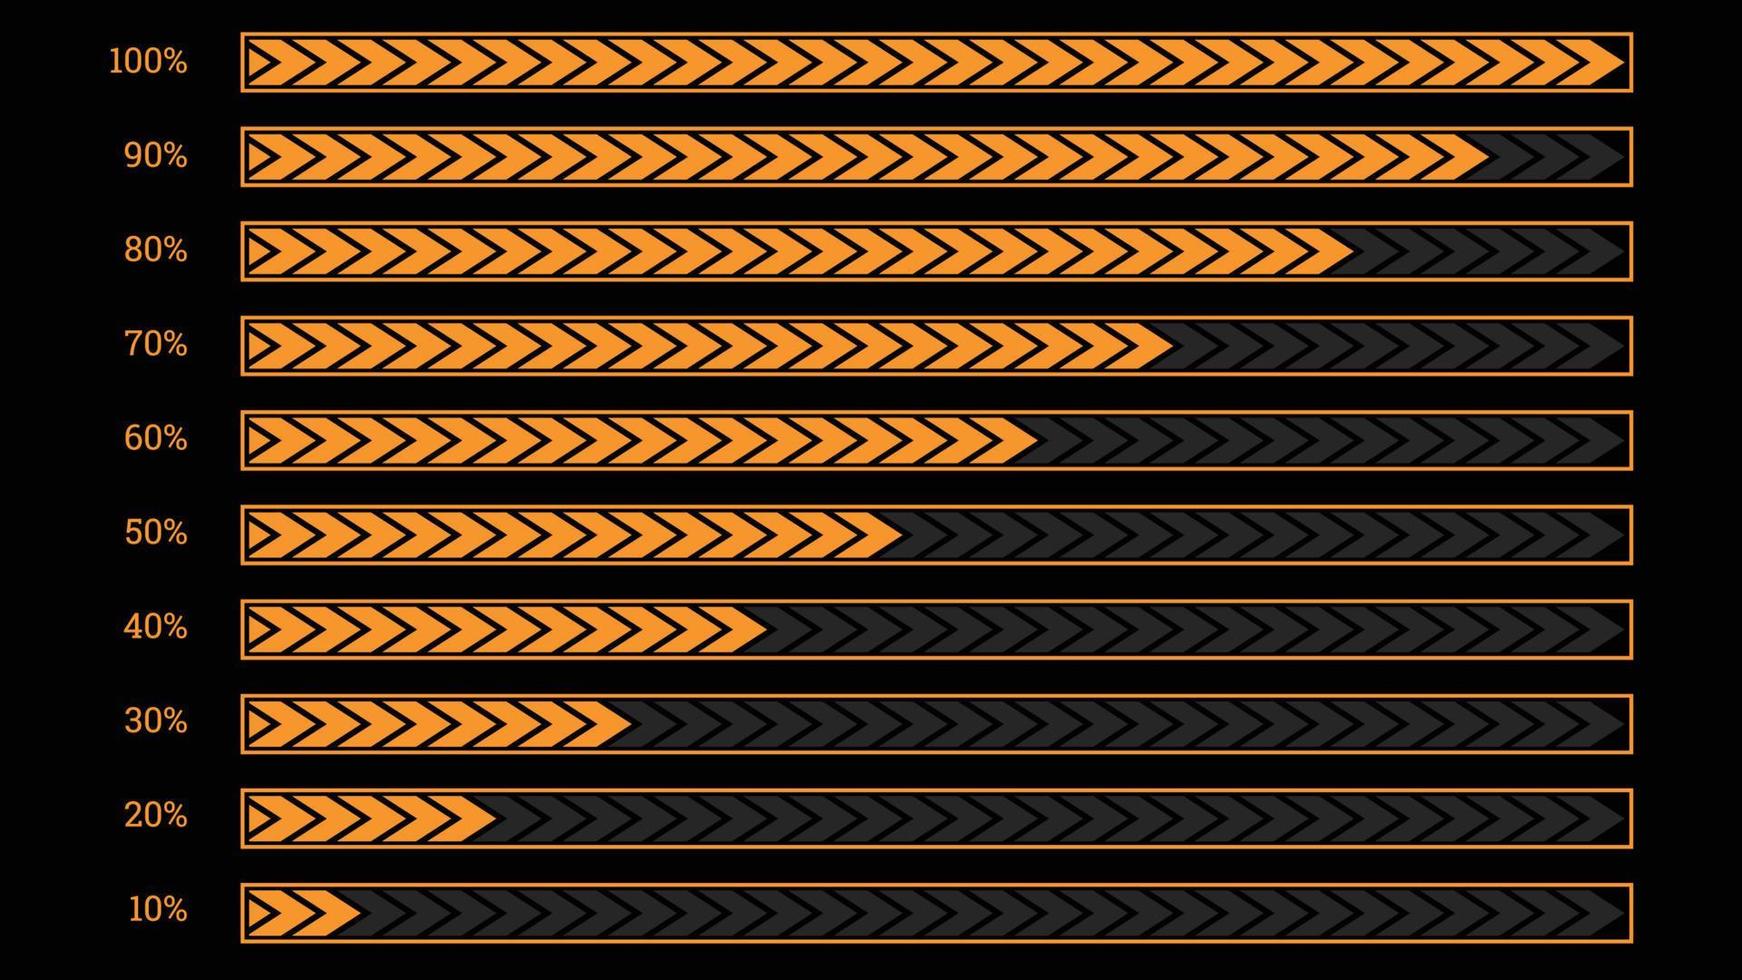 objeto de infográficos de porcentagem moderna definido em forma de barra laranja cortada vetor